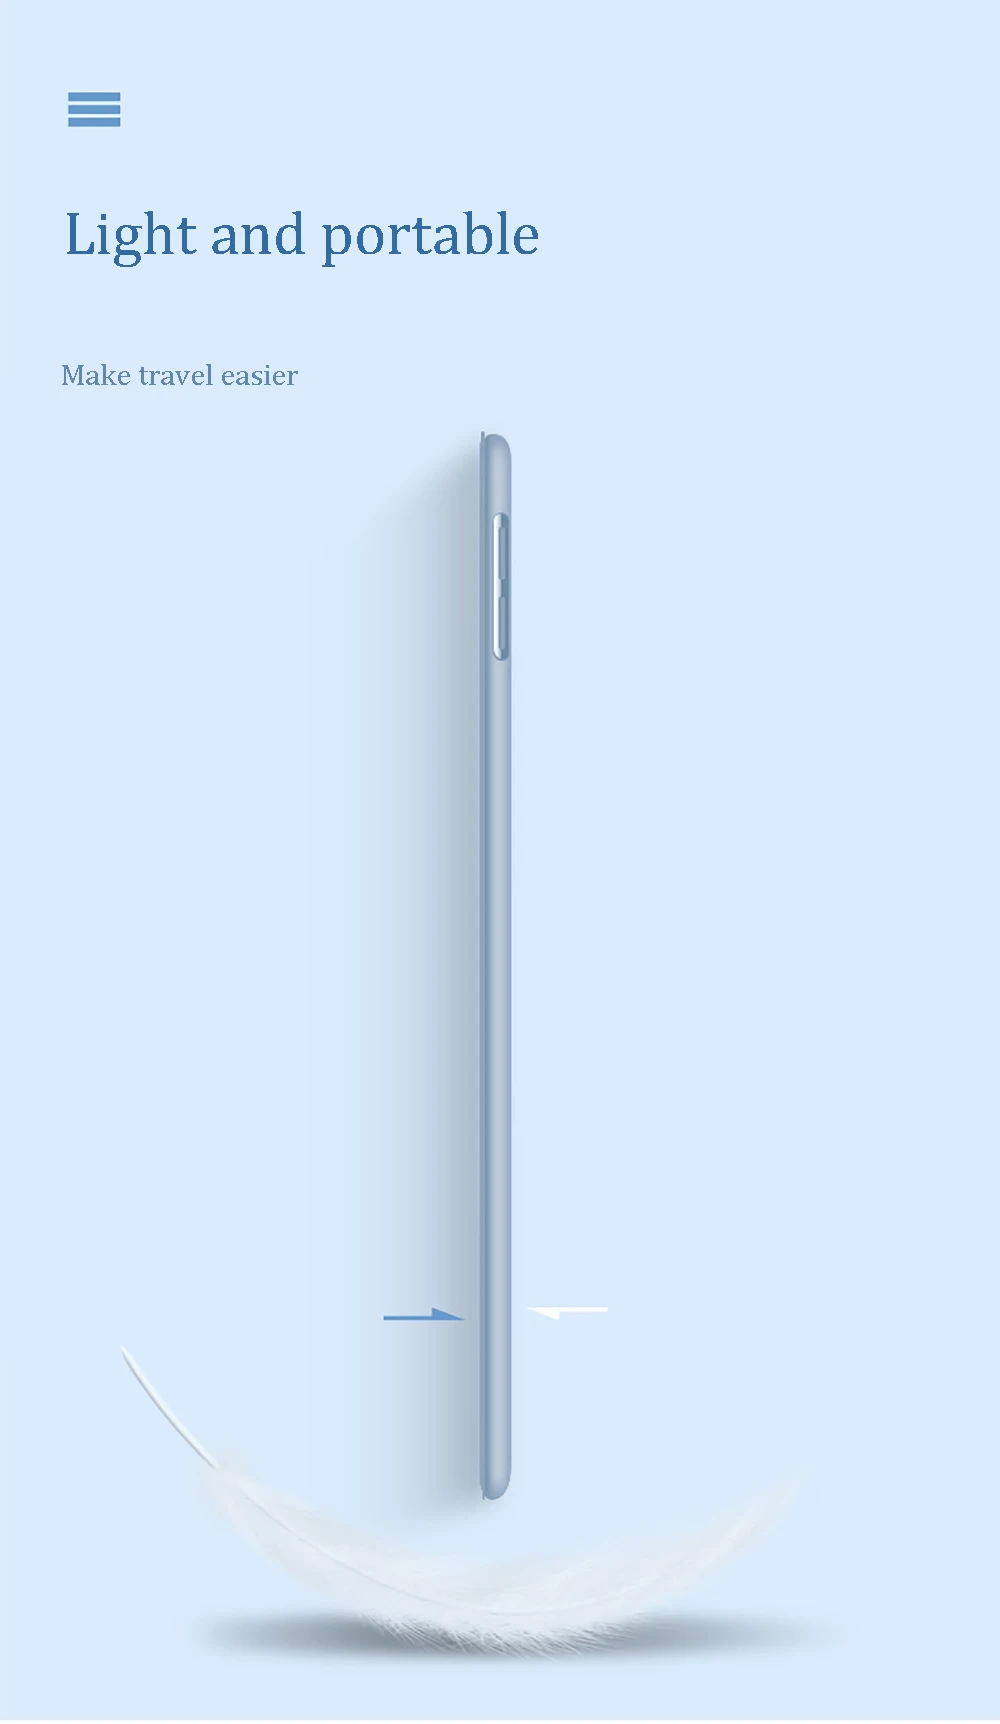 С держателем карандаша чехол для iPad 10,2 дюймов умный чехол мягкий силиконовый защитный чехол Авто сон/Пробуждение крышка модель A2197